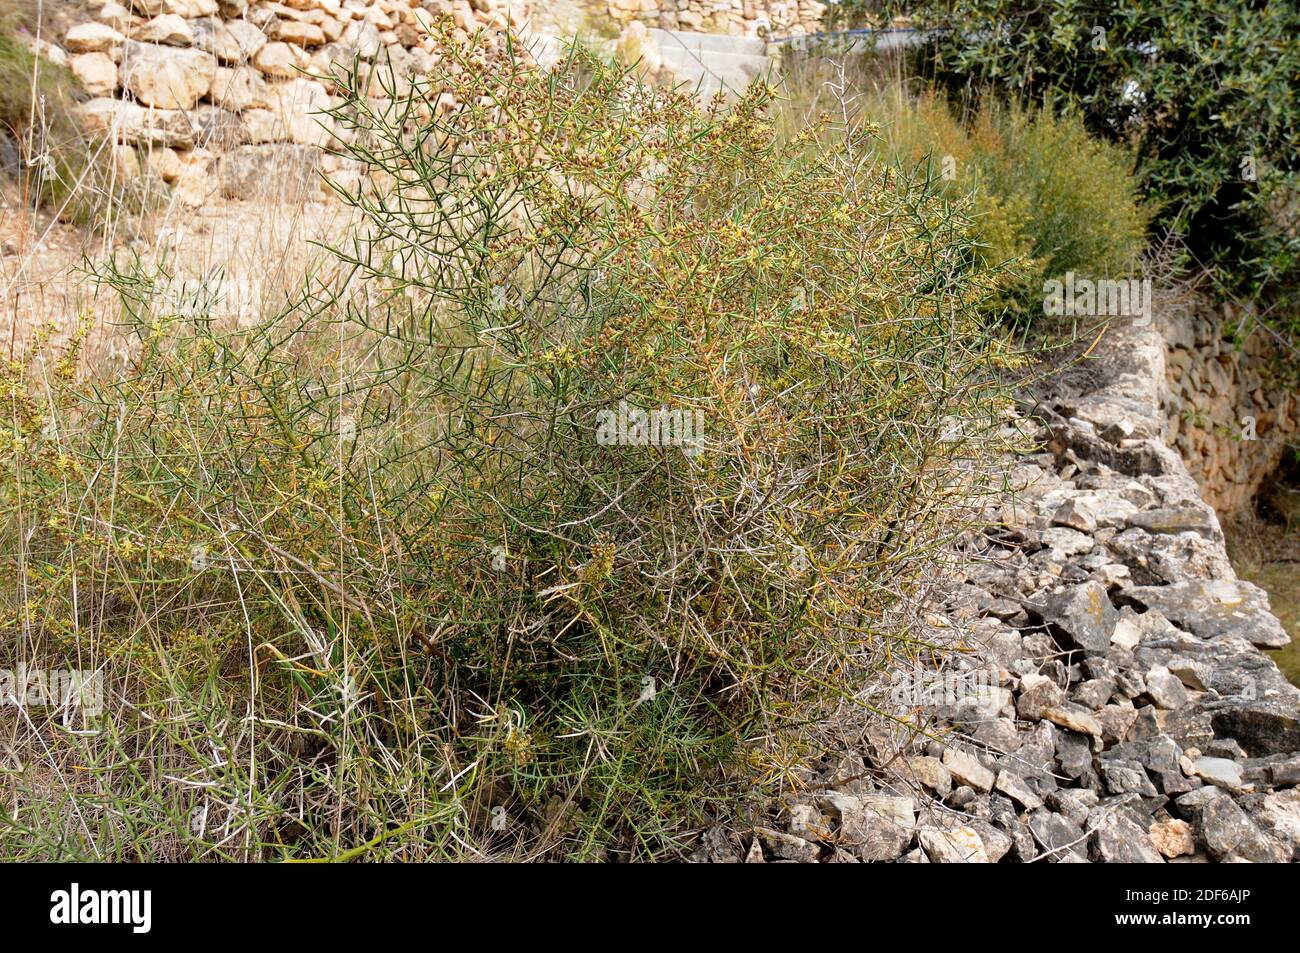 Blühender Spargel (Spargel horridus) ist ein stacheliger Strauch, der in Ostspanien einschließlich der Balearen beheimatet ist. Angiospermen. Asparagaceae. Stockfoto